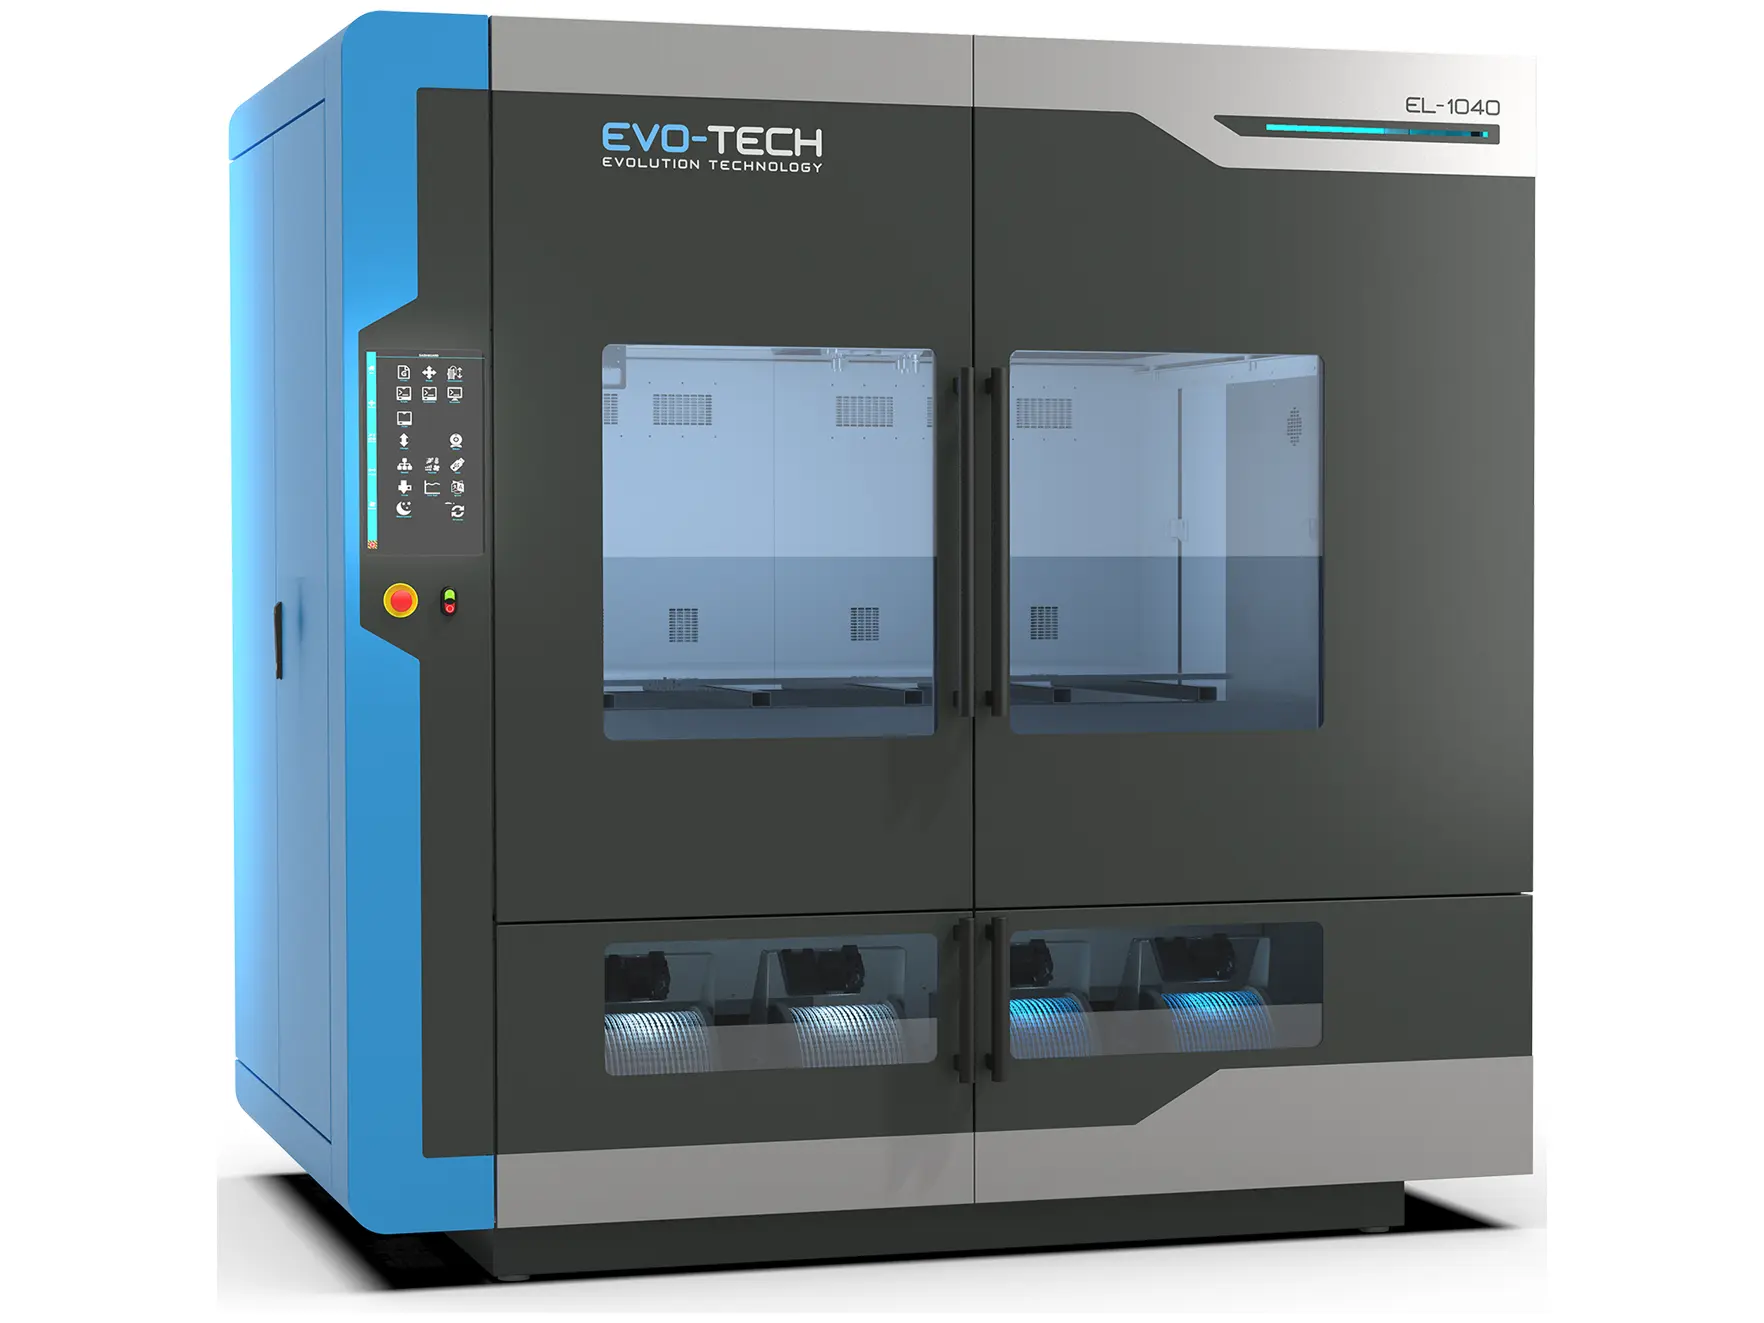 EL-140 3D Printer